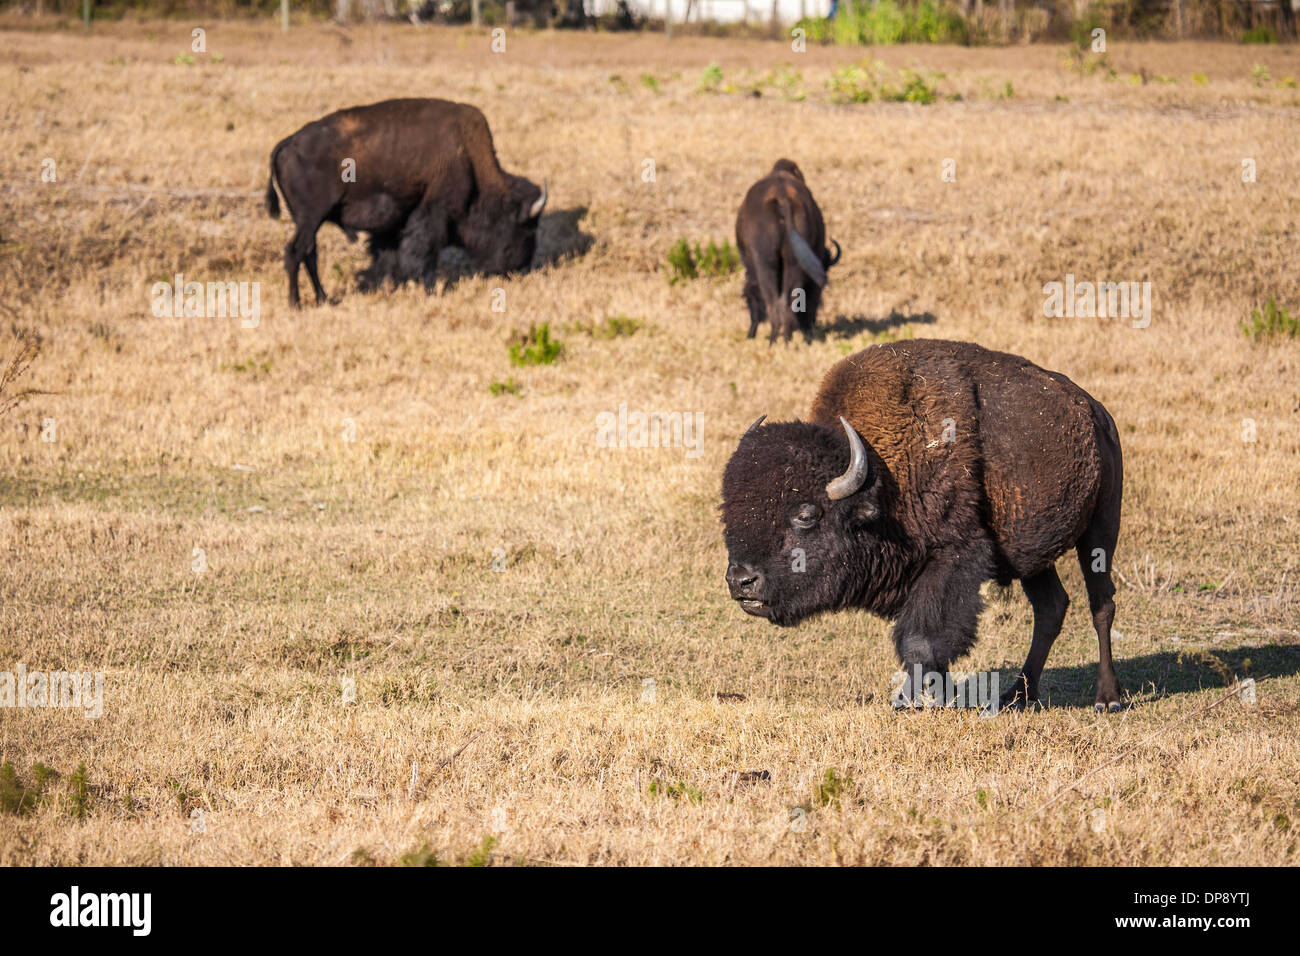 American el bisonte (Bison bison), también conocido como American el pastoreo de búfalos en un campo de hierba en la Florida Central Foto de stock